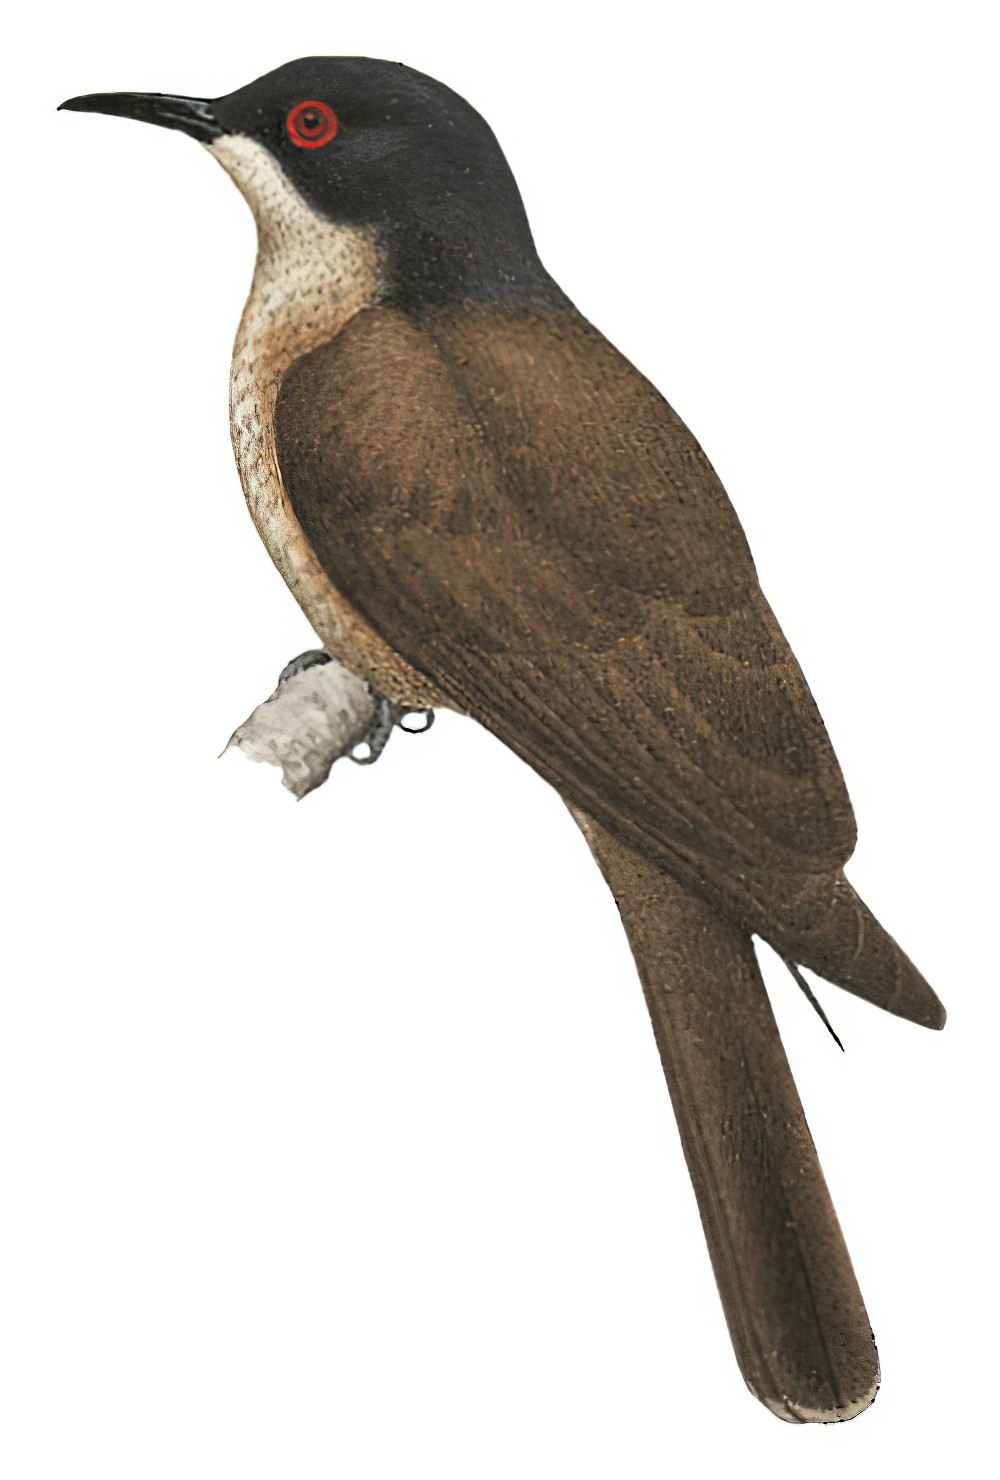 Long-billed Cuckoo / Chrysococcyx megarhynchus